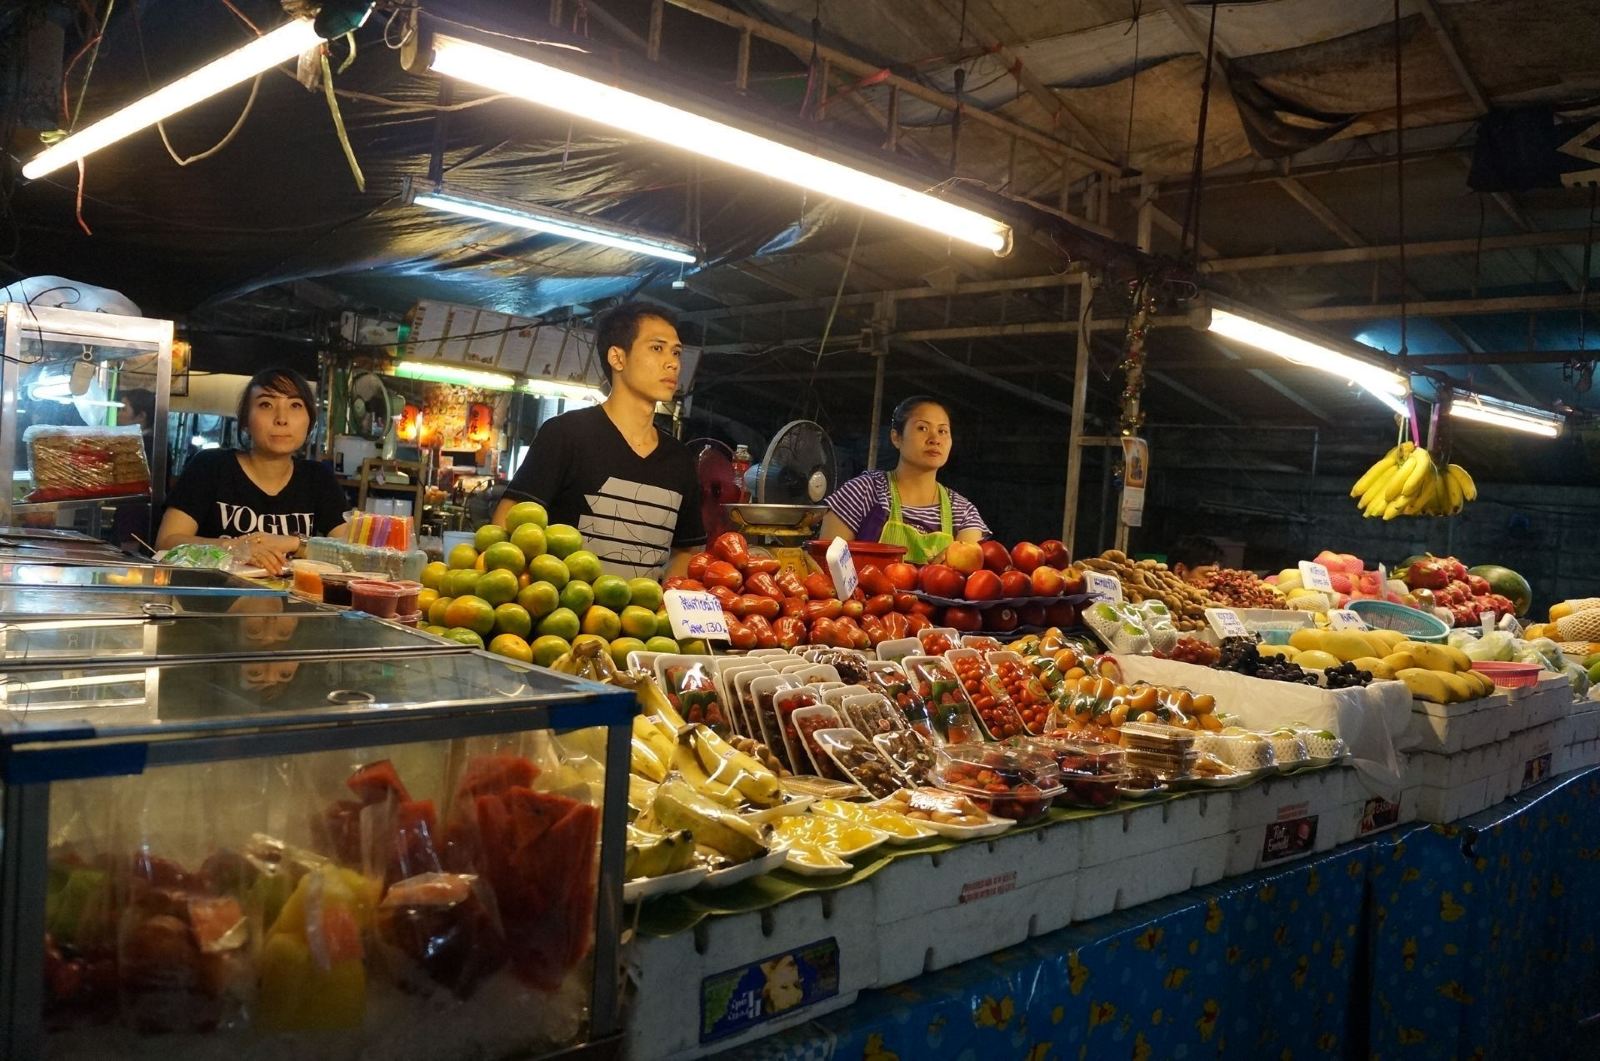 泰国曼谷 帕蓬夜市 ตลาดกลางคืนพัฒน์พงษ์